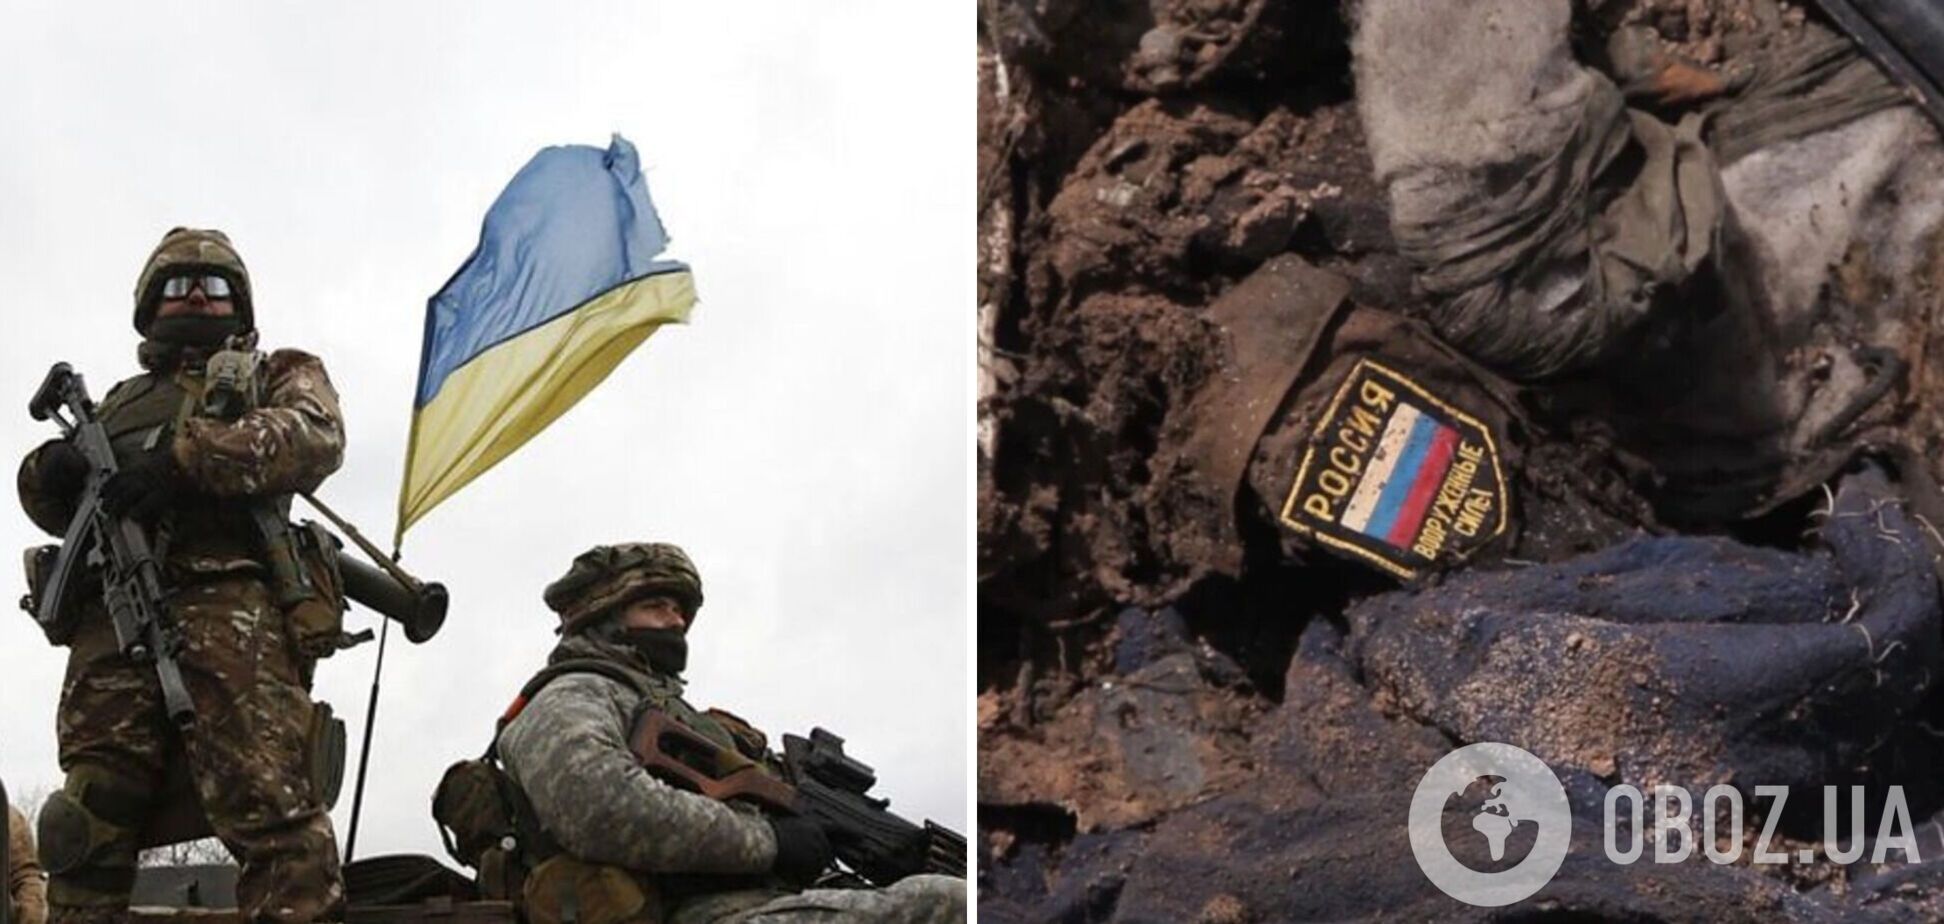 'Ми на своїй землі': ЗСУ відзвітували про знищення на Донецькому напрямку ворожої техніки. Відео